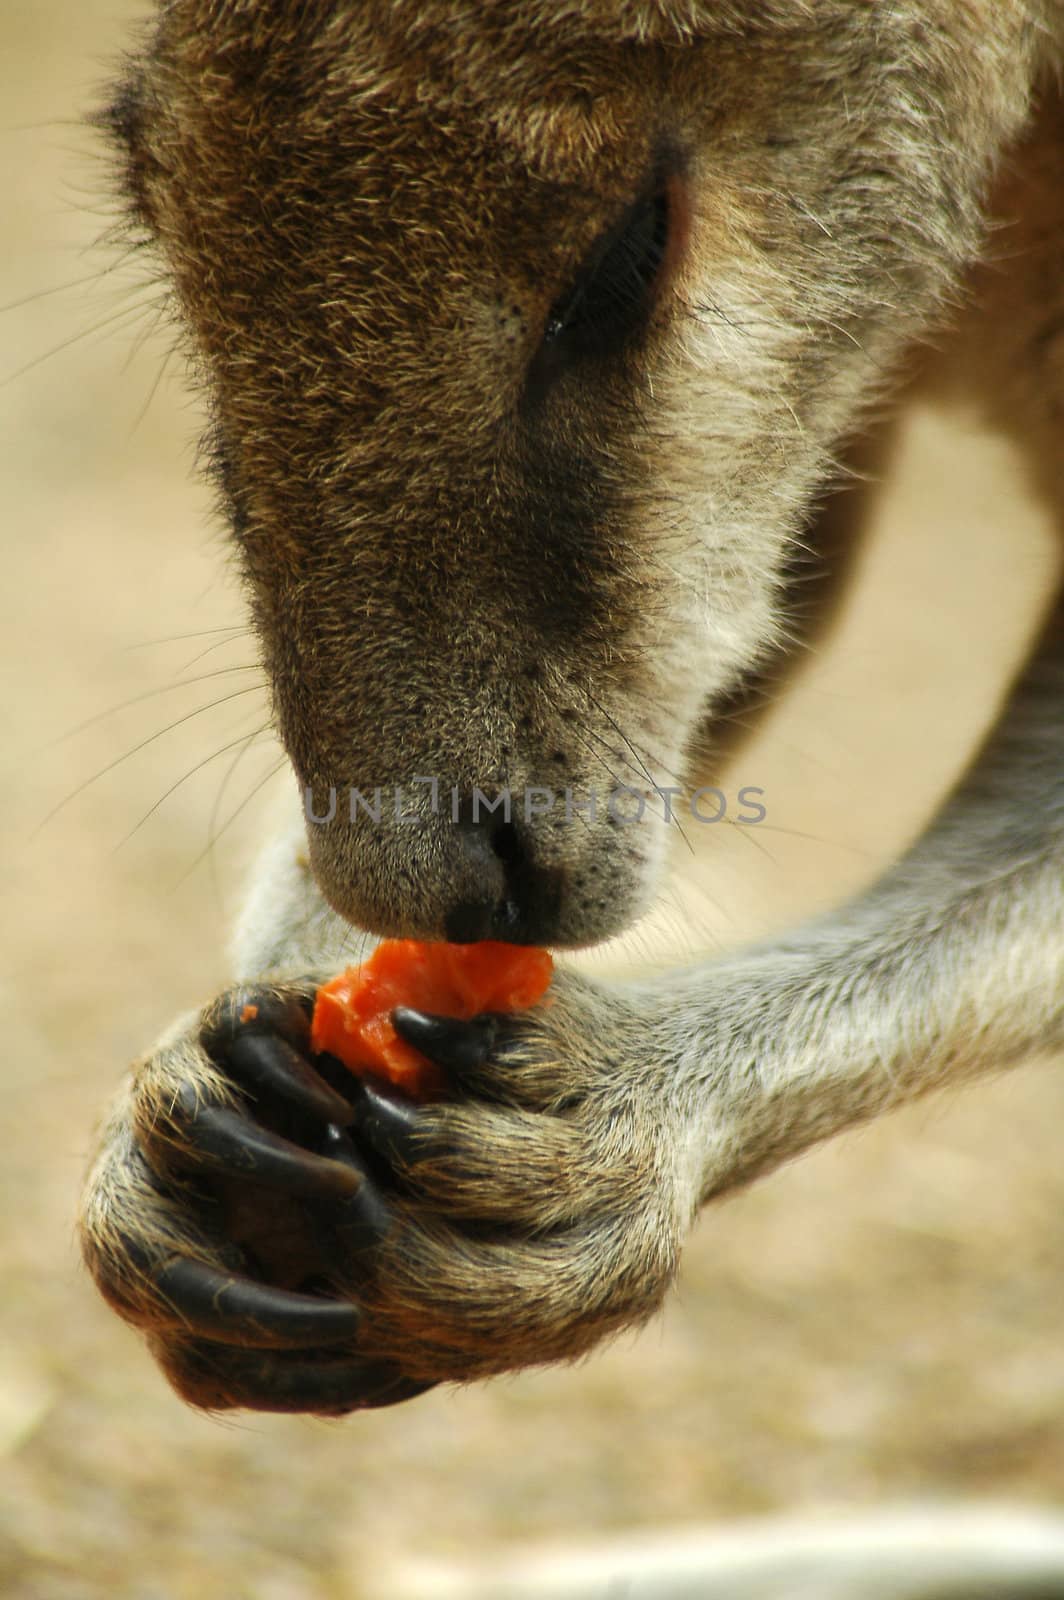 kangaroo eating red carrot detail, photo taken in sydney zoo